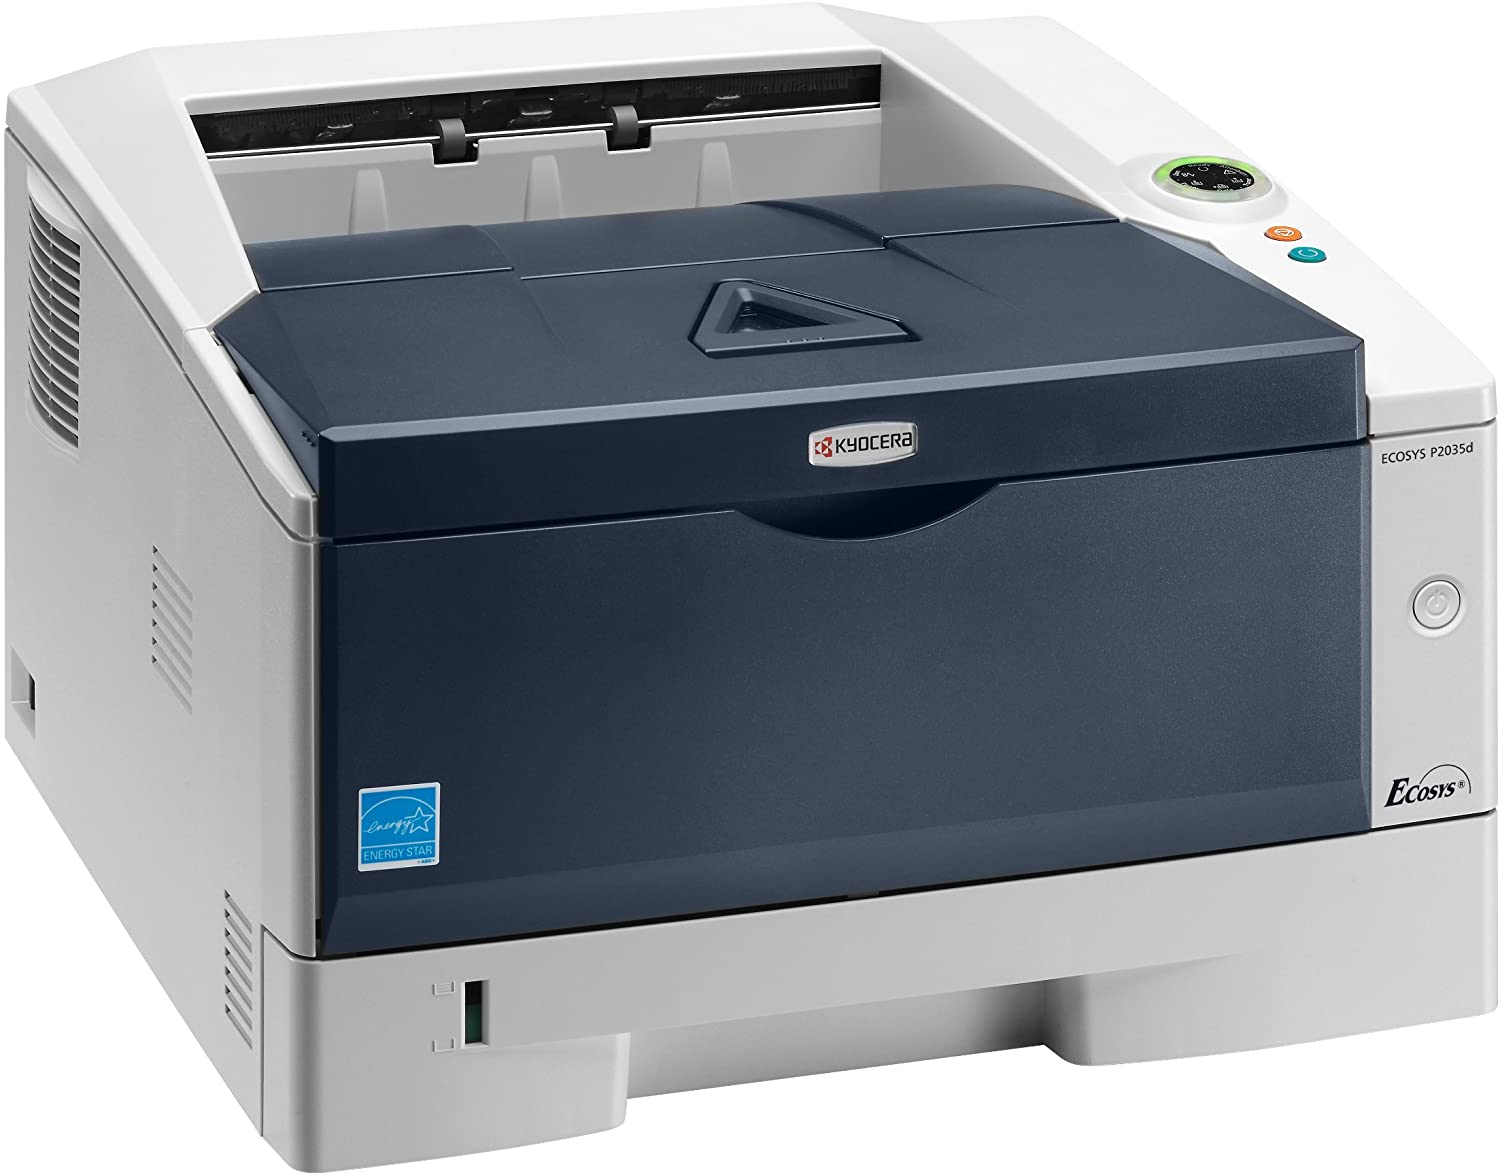 Kyocera Ecosys P2035d monochrome B/W printer 35ppm A4